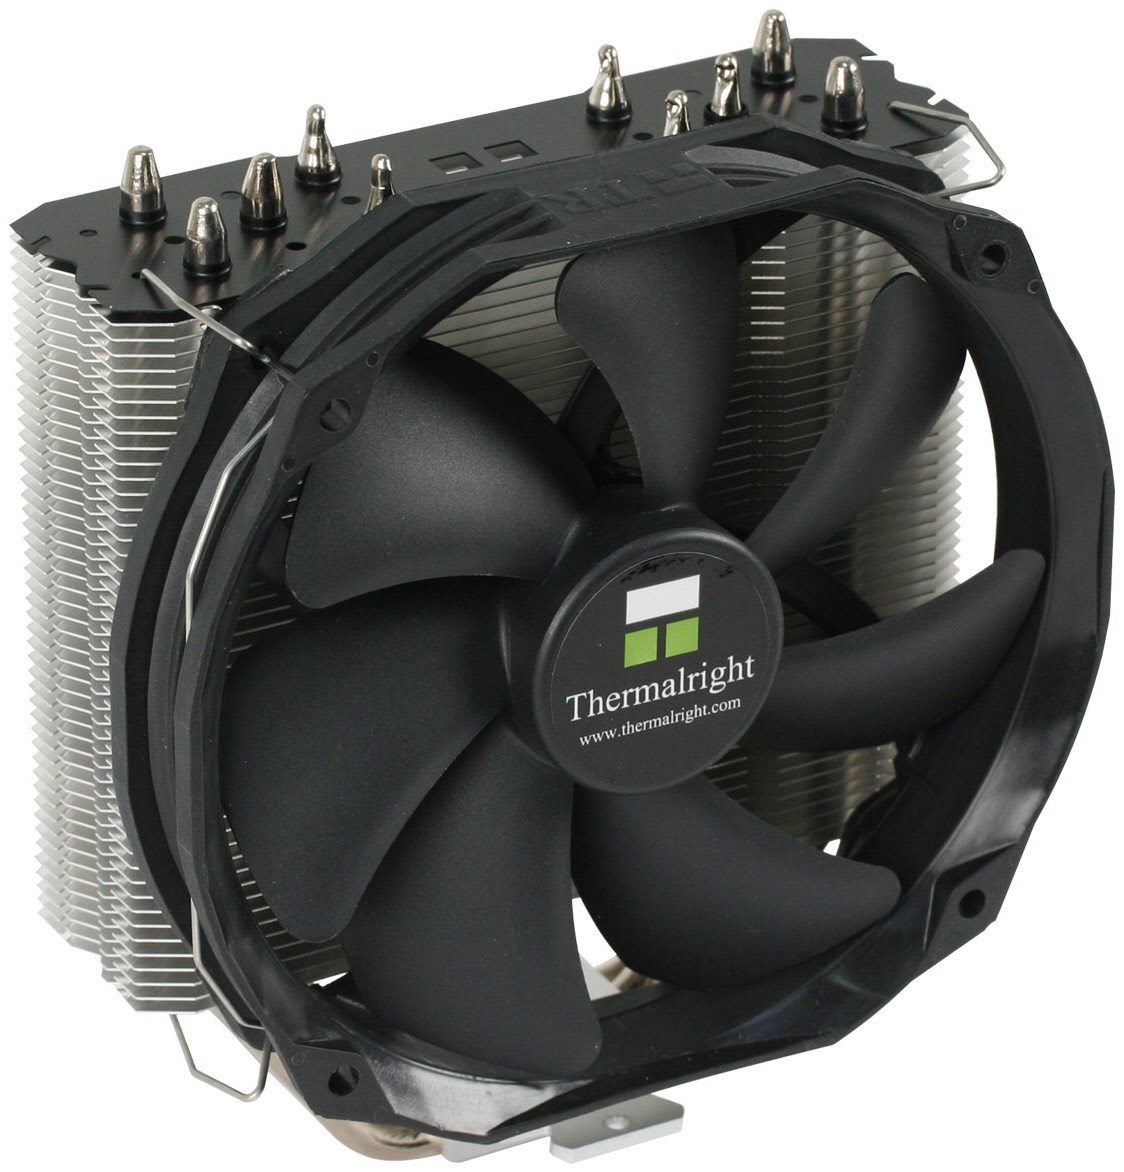 True Spirit 140 Direct CPU-Kühler von Thermalright